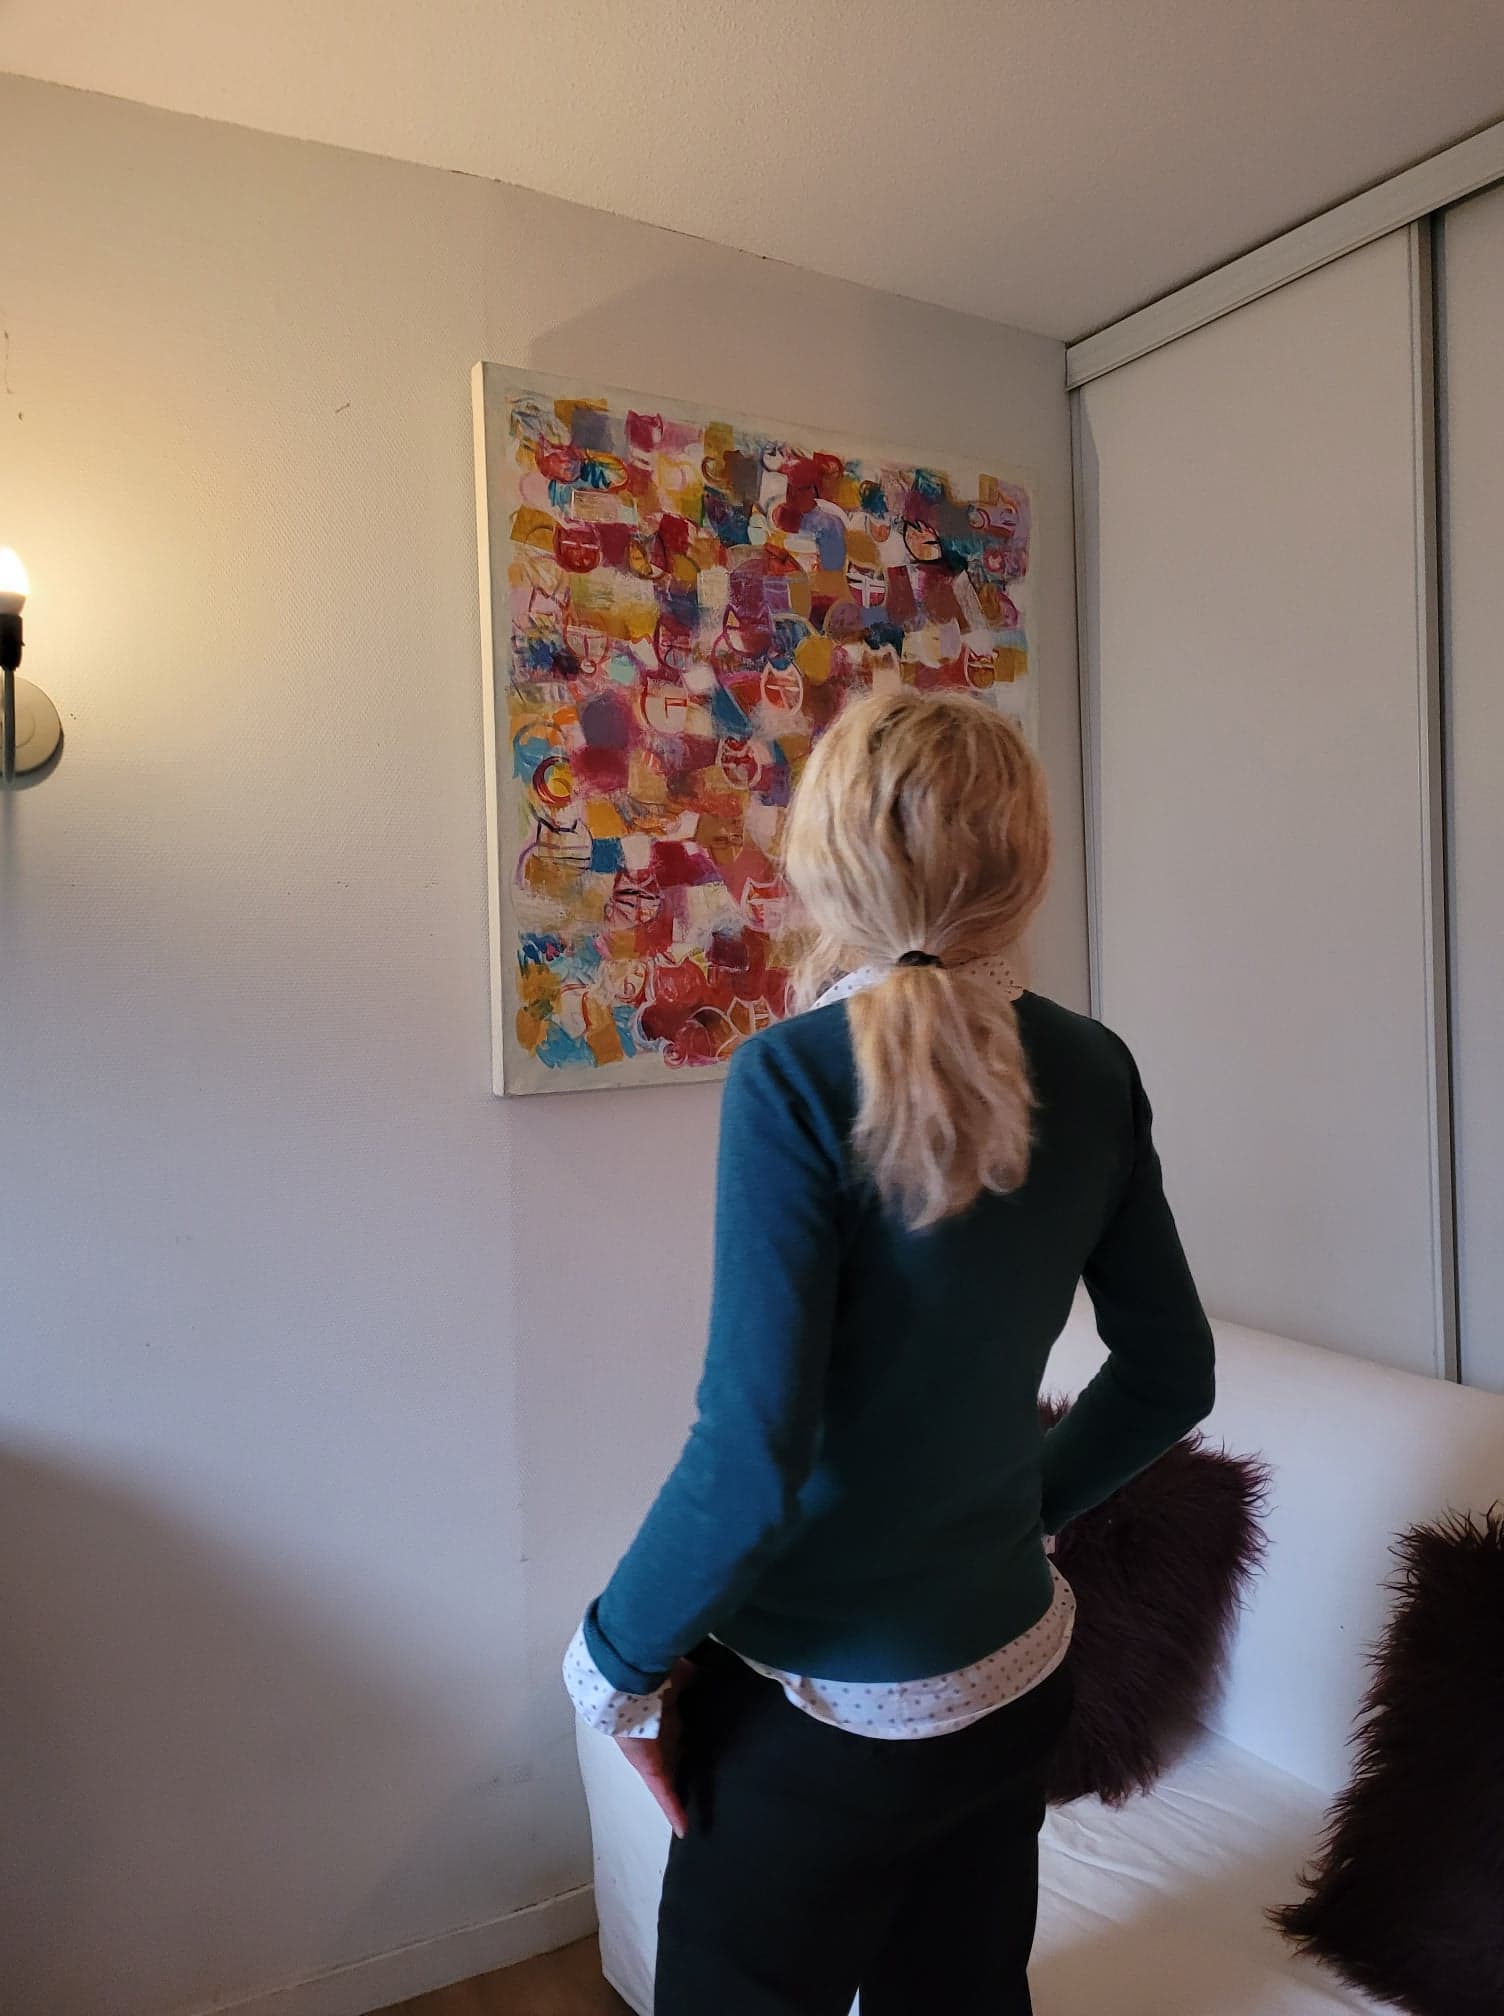 Une visiteuse regarde "Chats", une toile de S. Nadin faite en 2019 de 100 x 100 cm